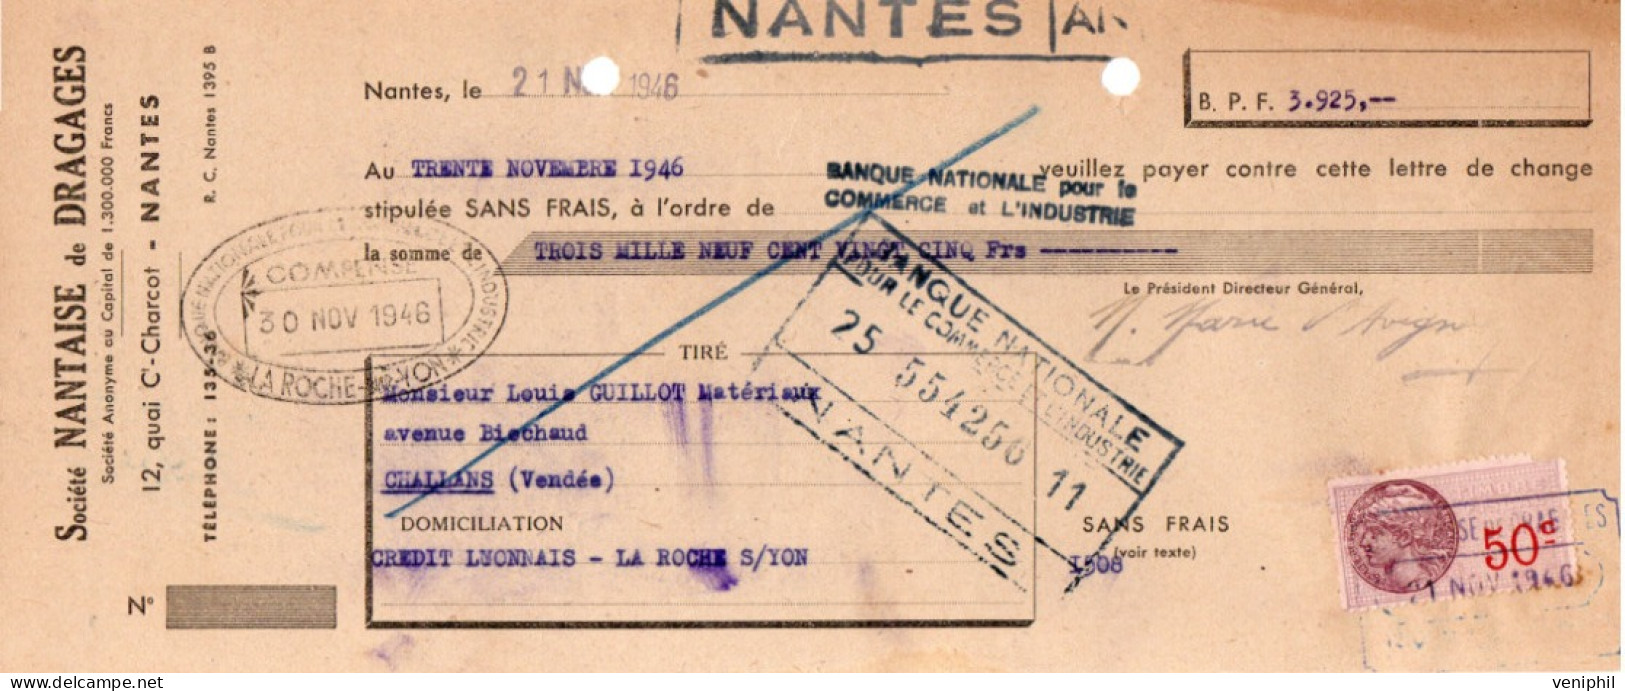 LETTRE  DE CHANGETIMBREE- SOCIETE NANTAISE DE DRAGAGES -NANTES - ANNEE 1946 - Lettres De Change